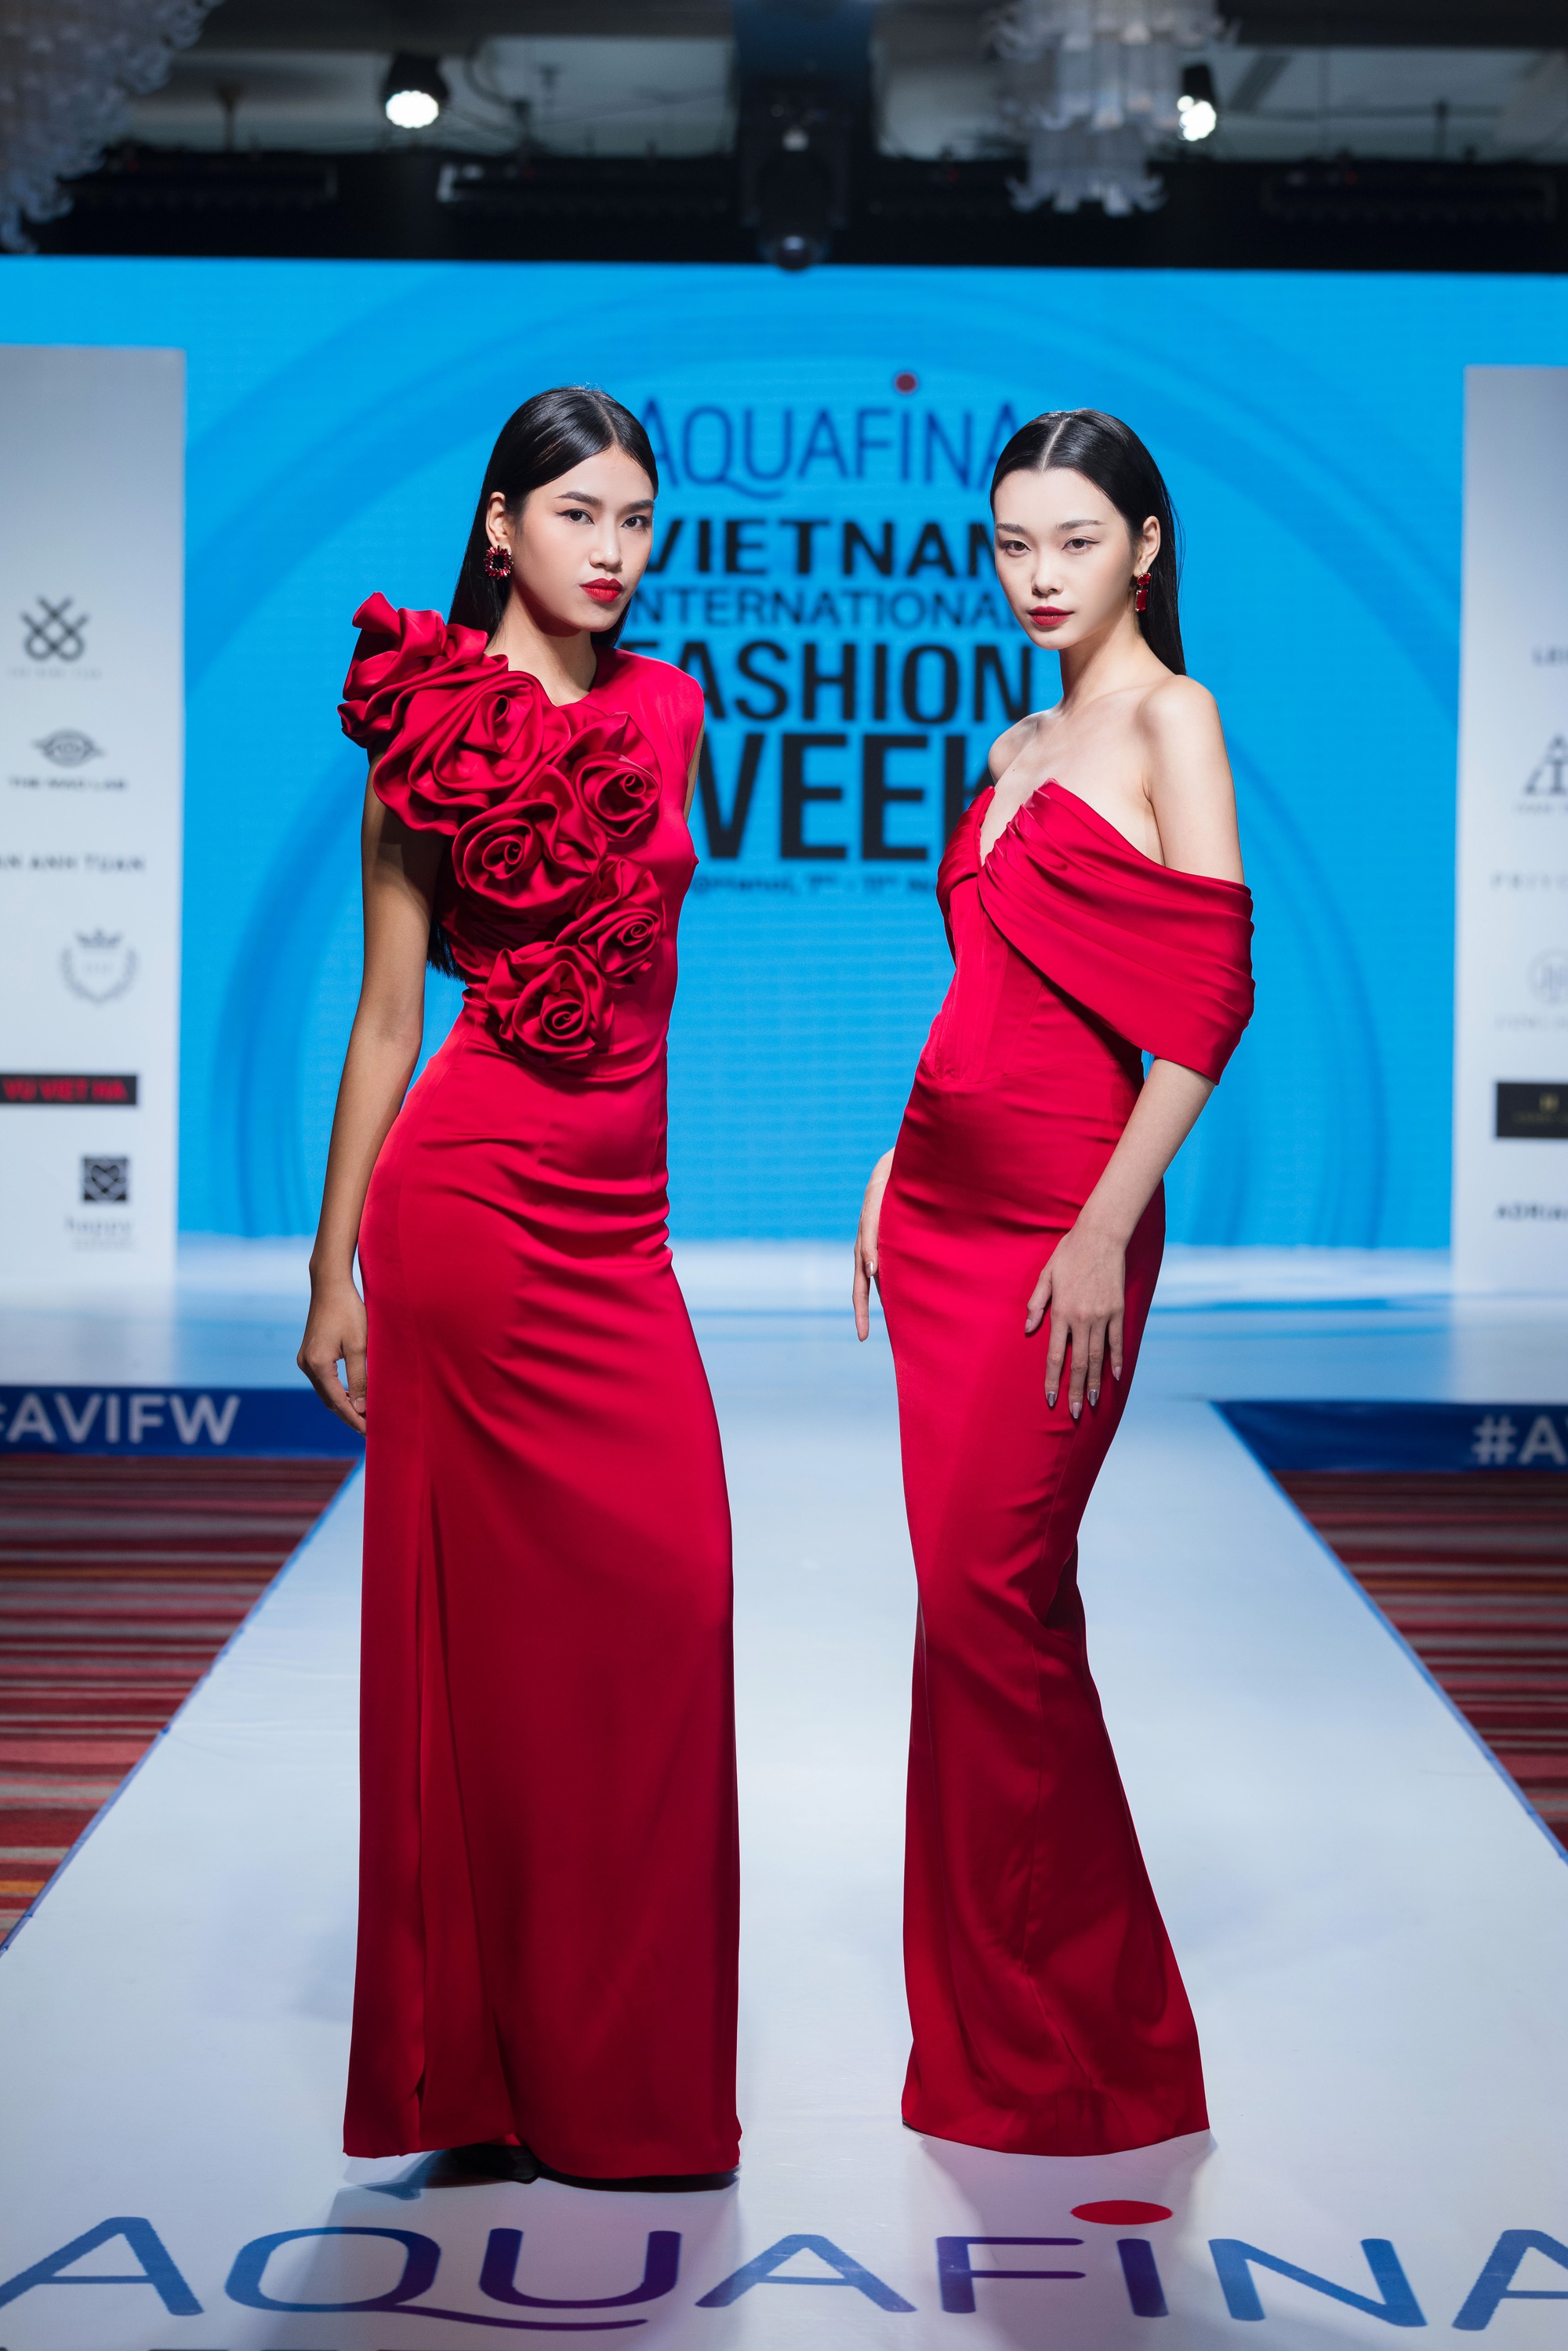 16 nhà thiết kế, thương hiệu sẽ tham dự Aquafina Tuần lễ thời trang Quốc tế Việt Nam - Ảnh 6.